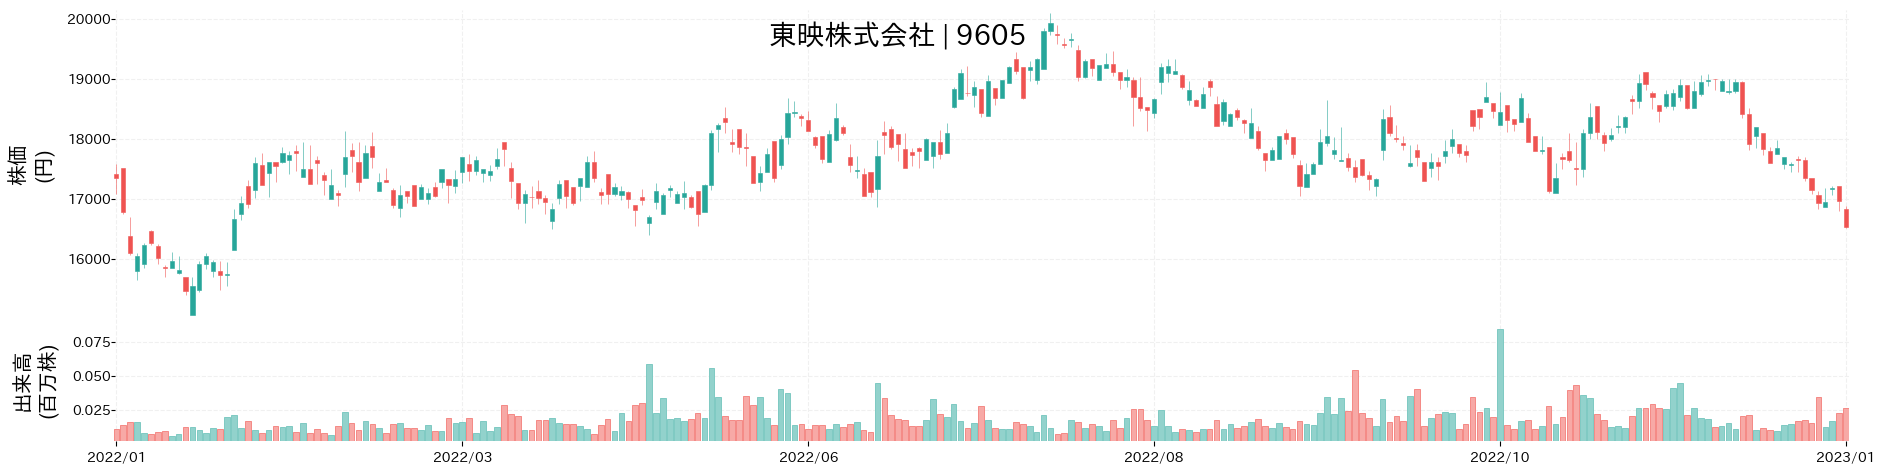 東映の株価推移(2022)